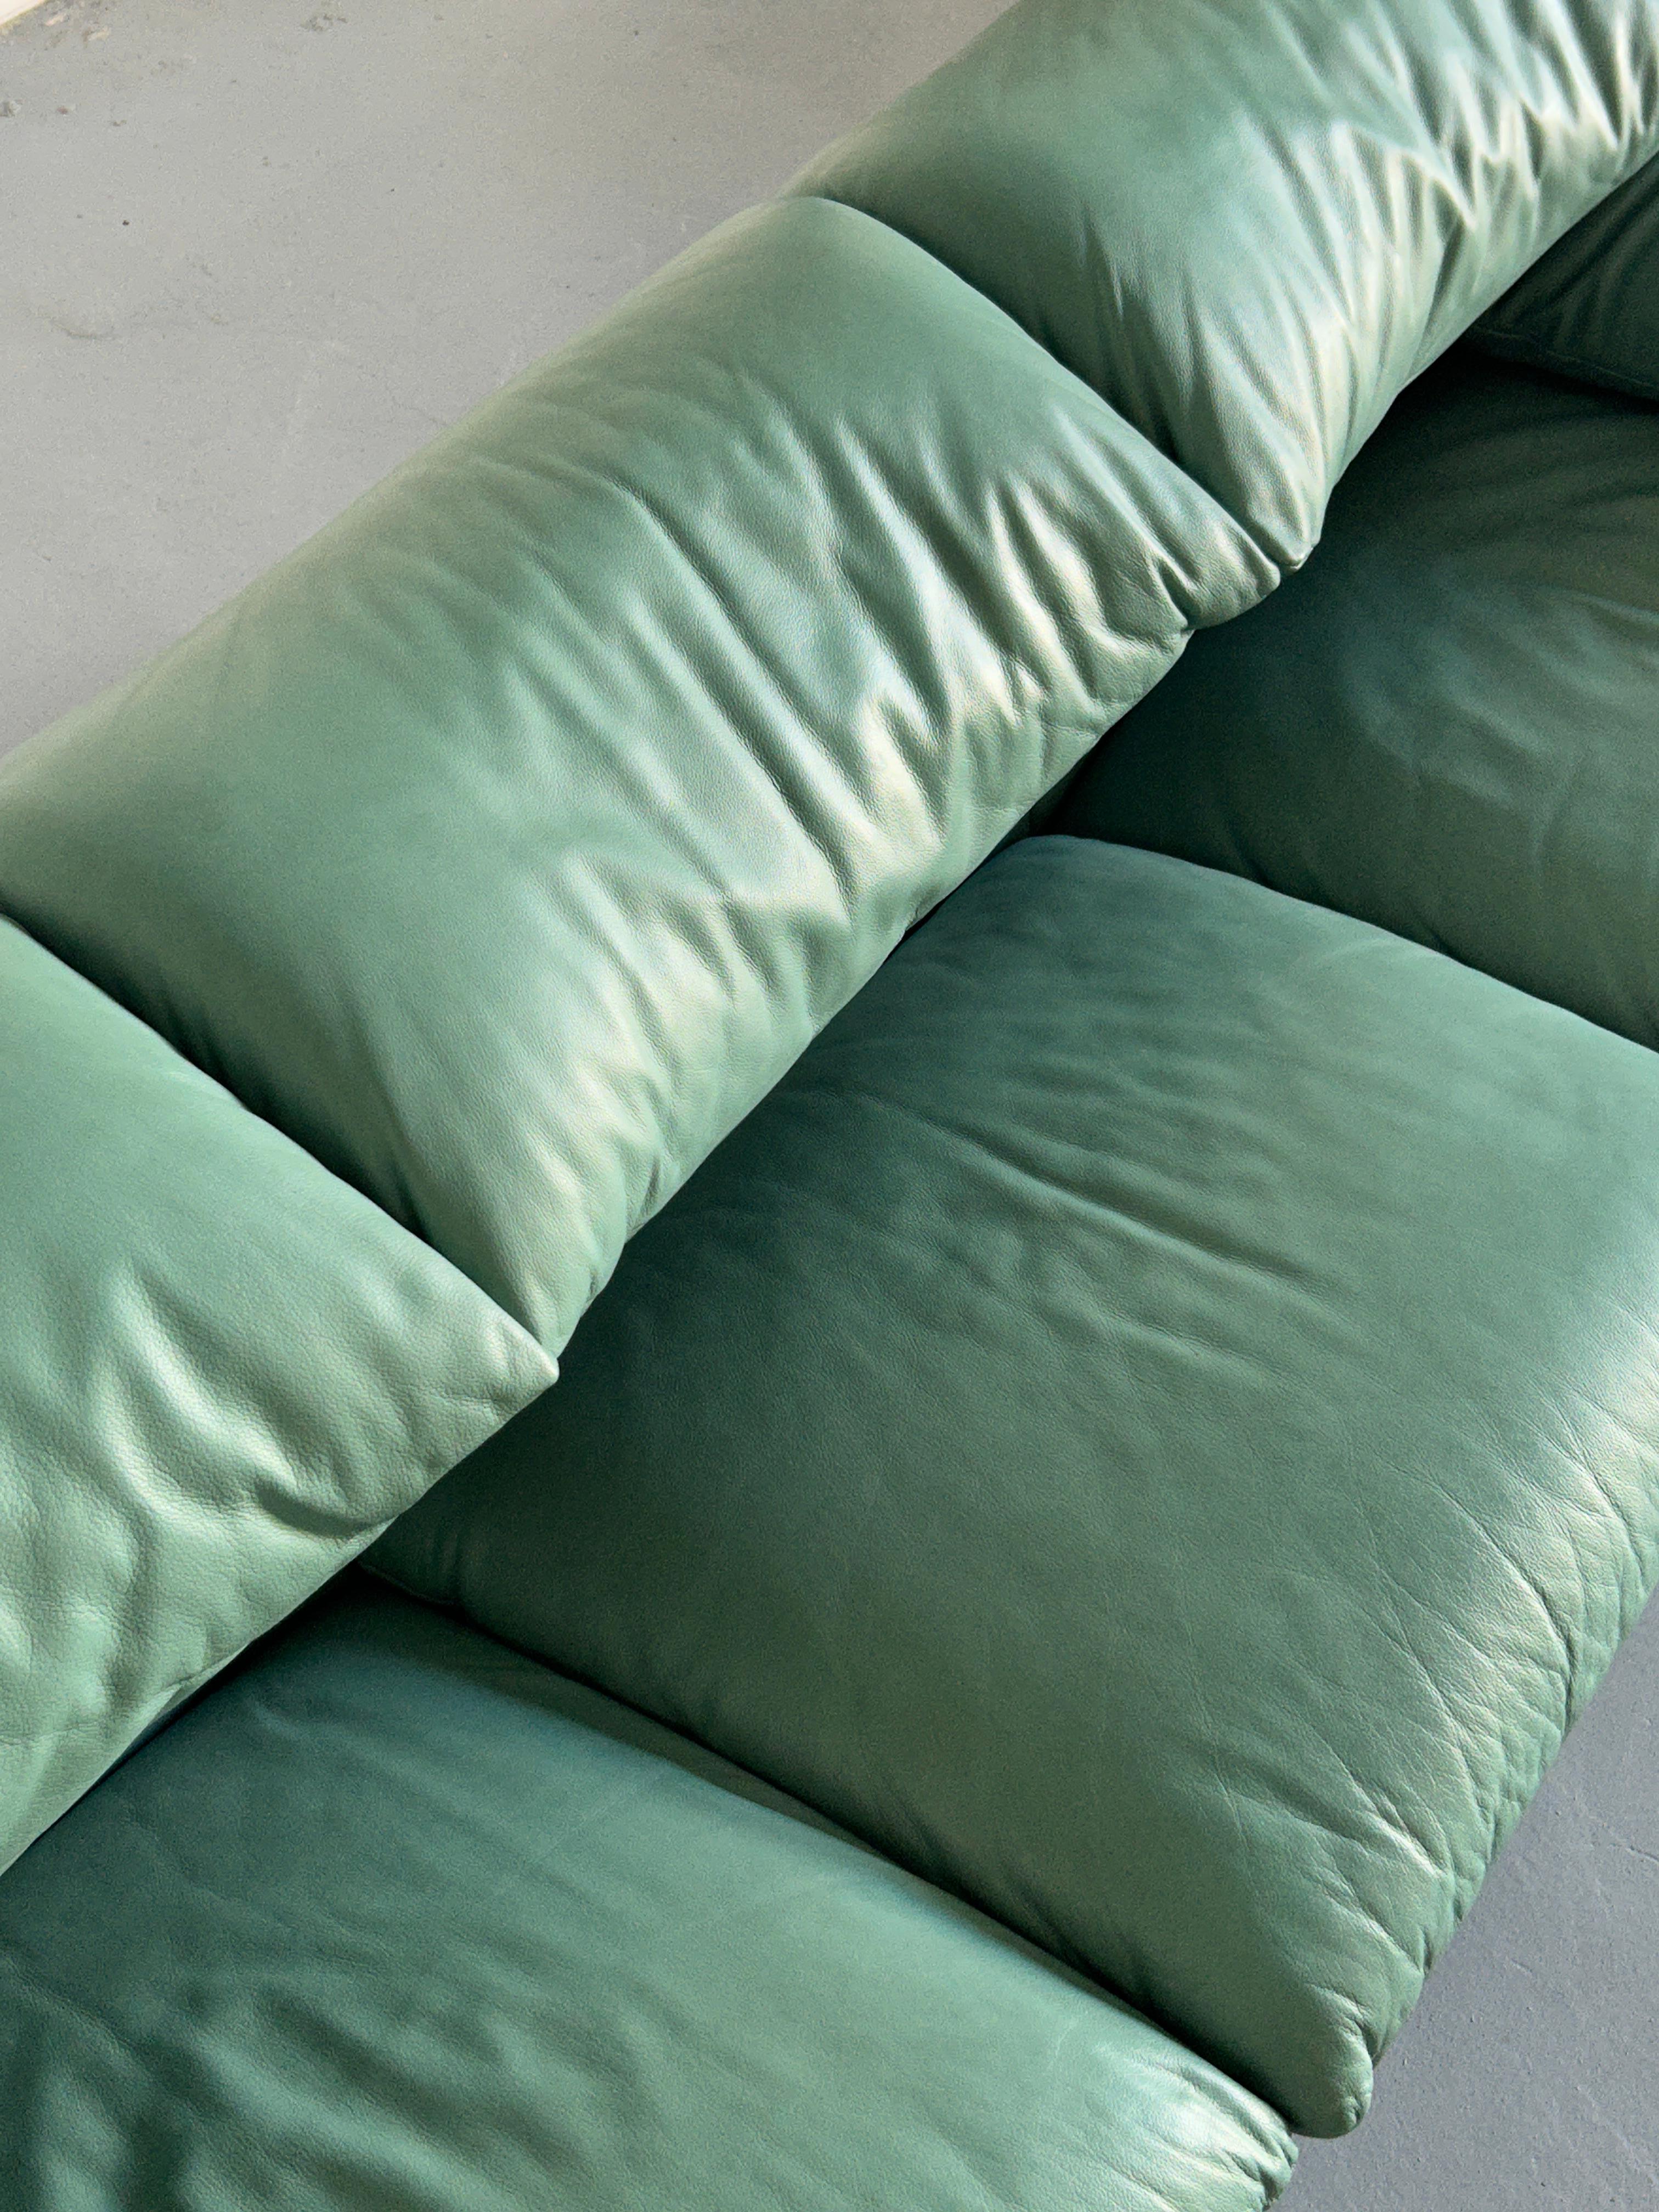  Vico Magistretti 'Maralunga' Mint Green Leather Sofa for Cassina, 1990s Italy 5